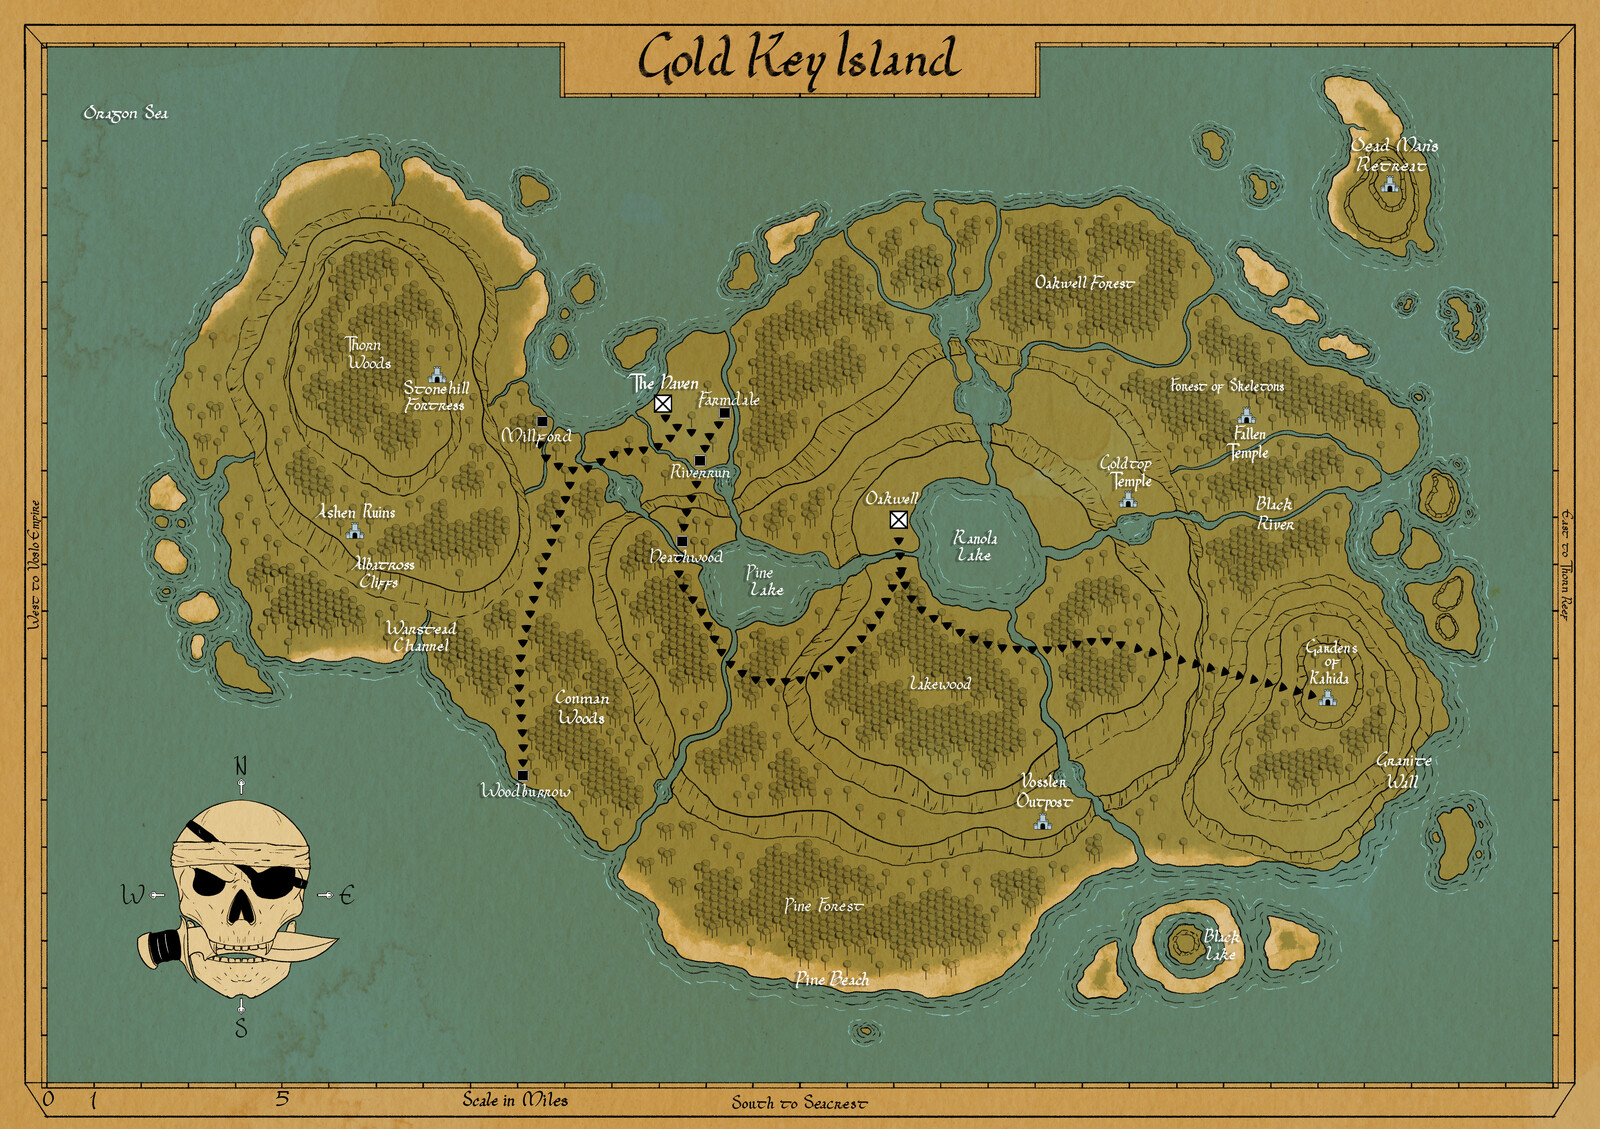 Gold Key Island